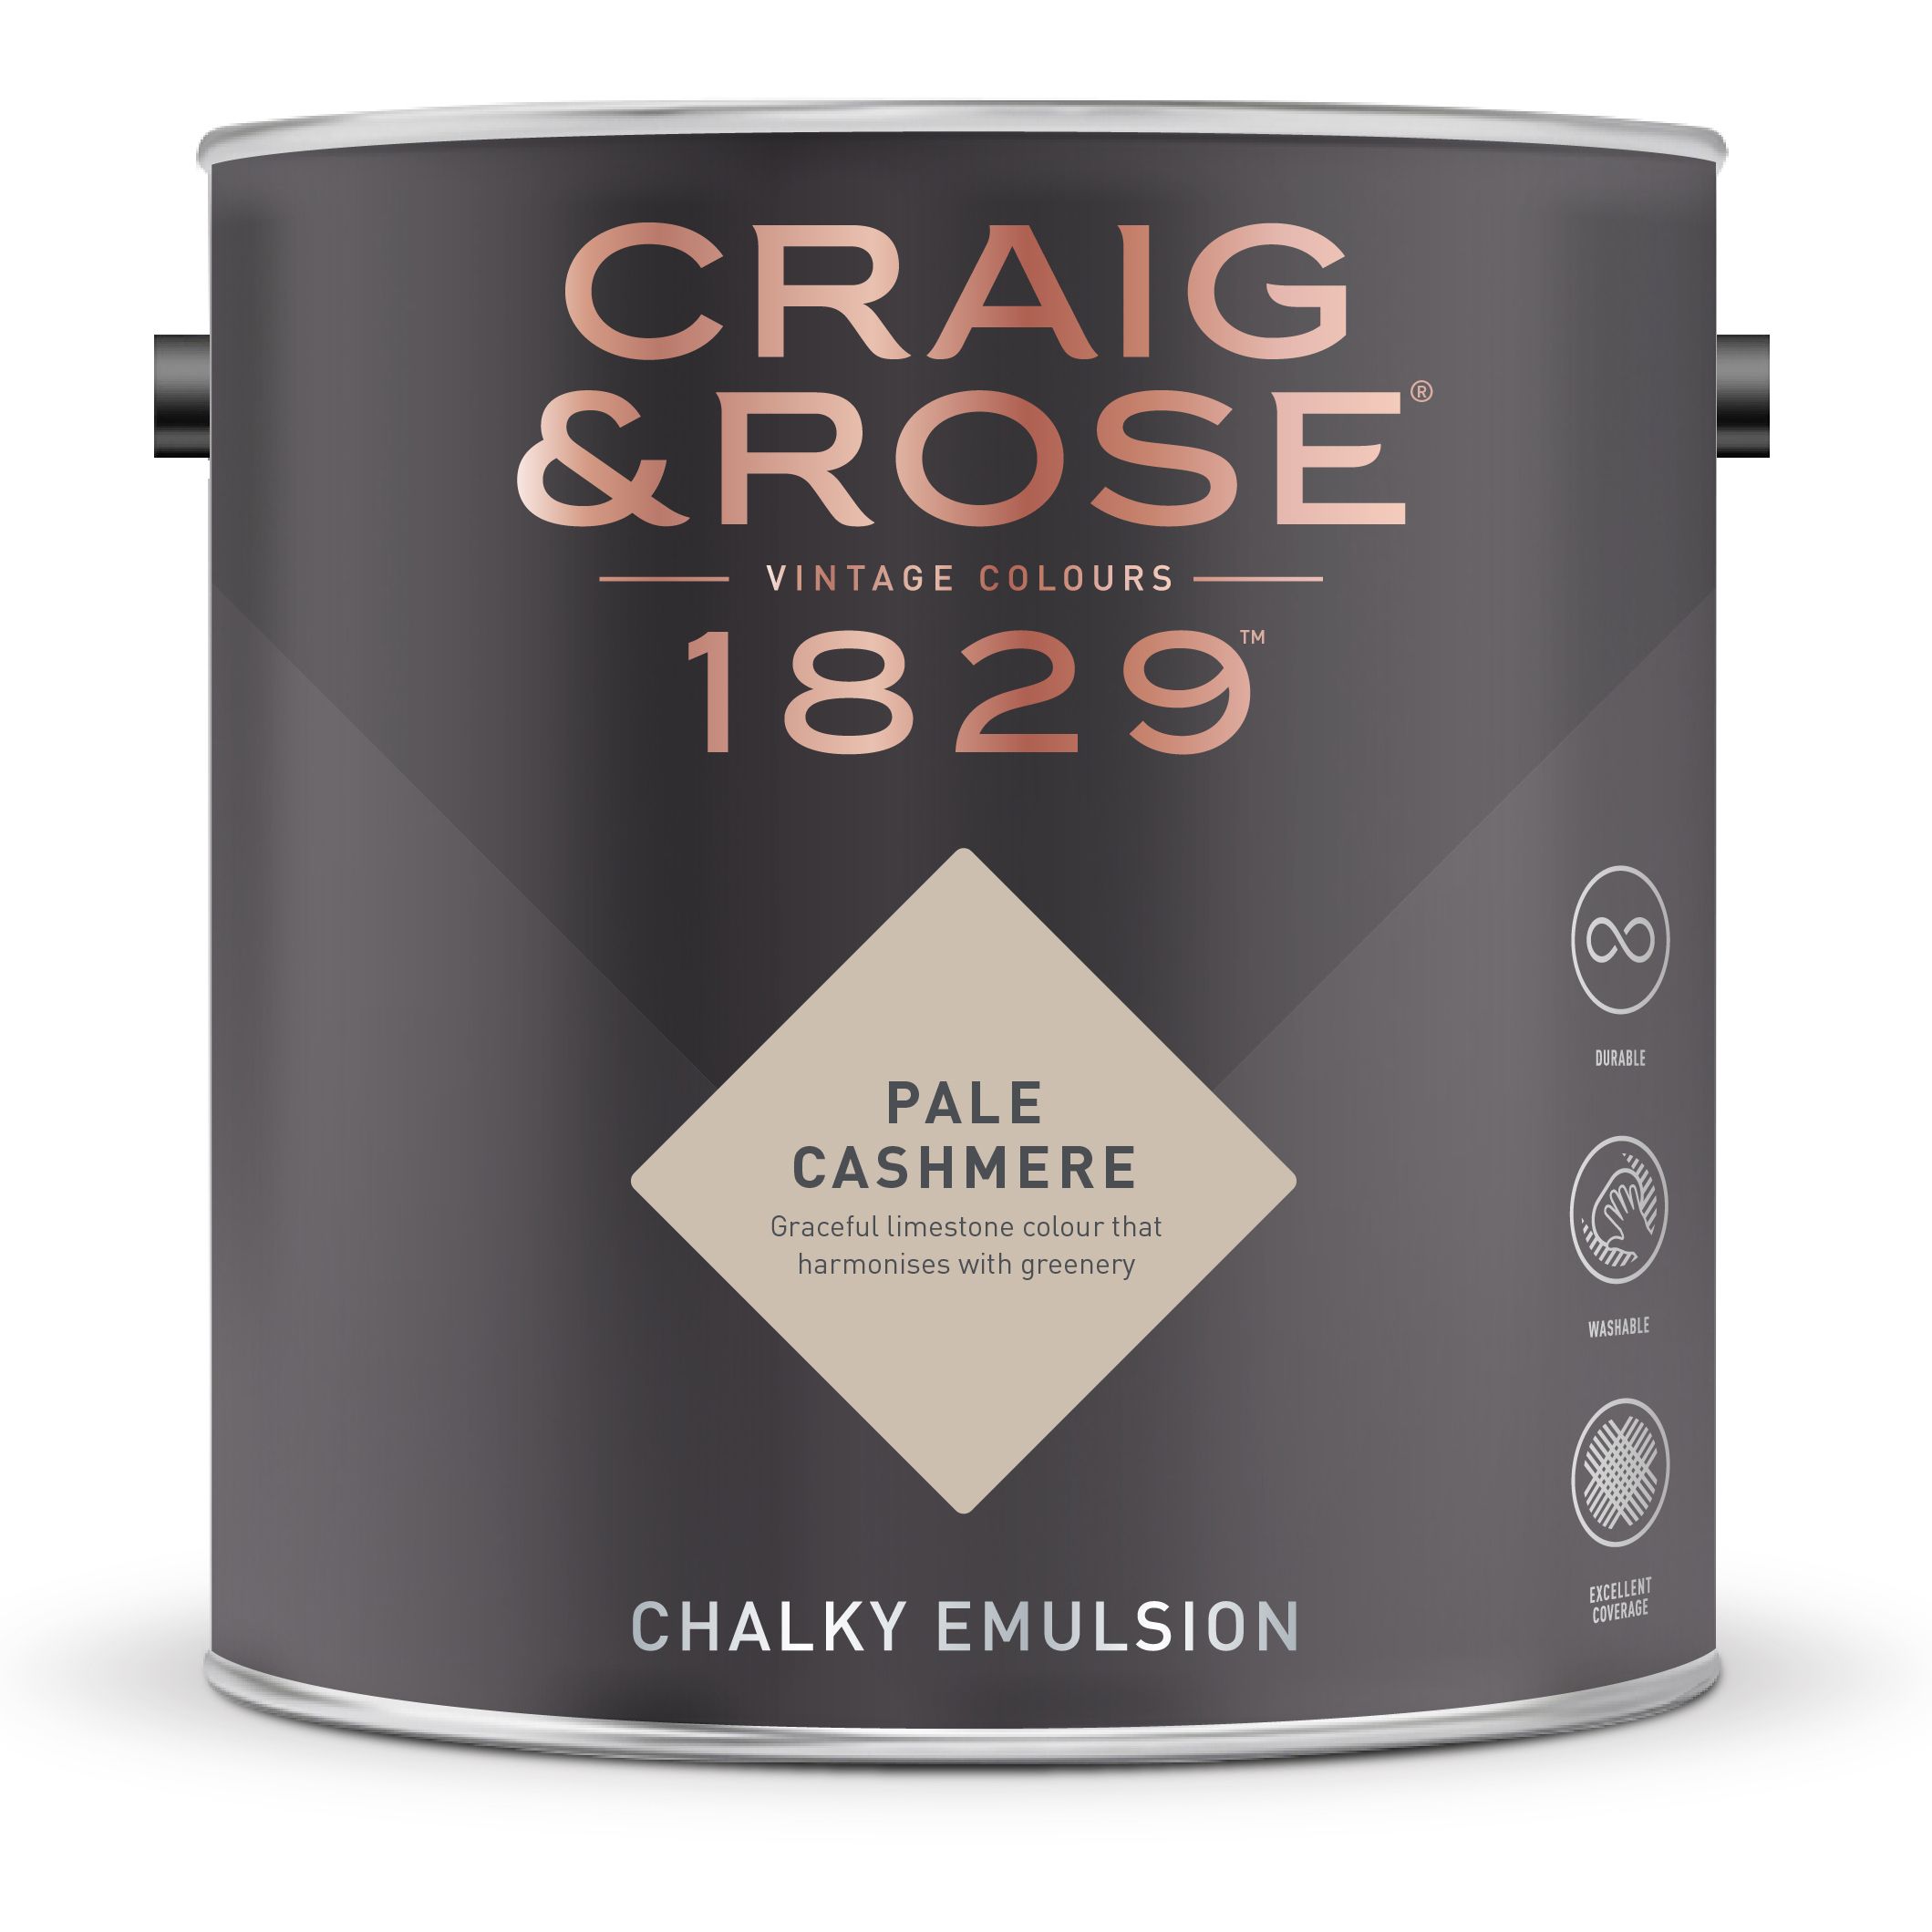 Craig & Rose 1829 Pale Cashmere Chalky Emulsion paint, 2.5L